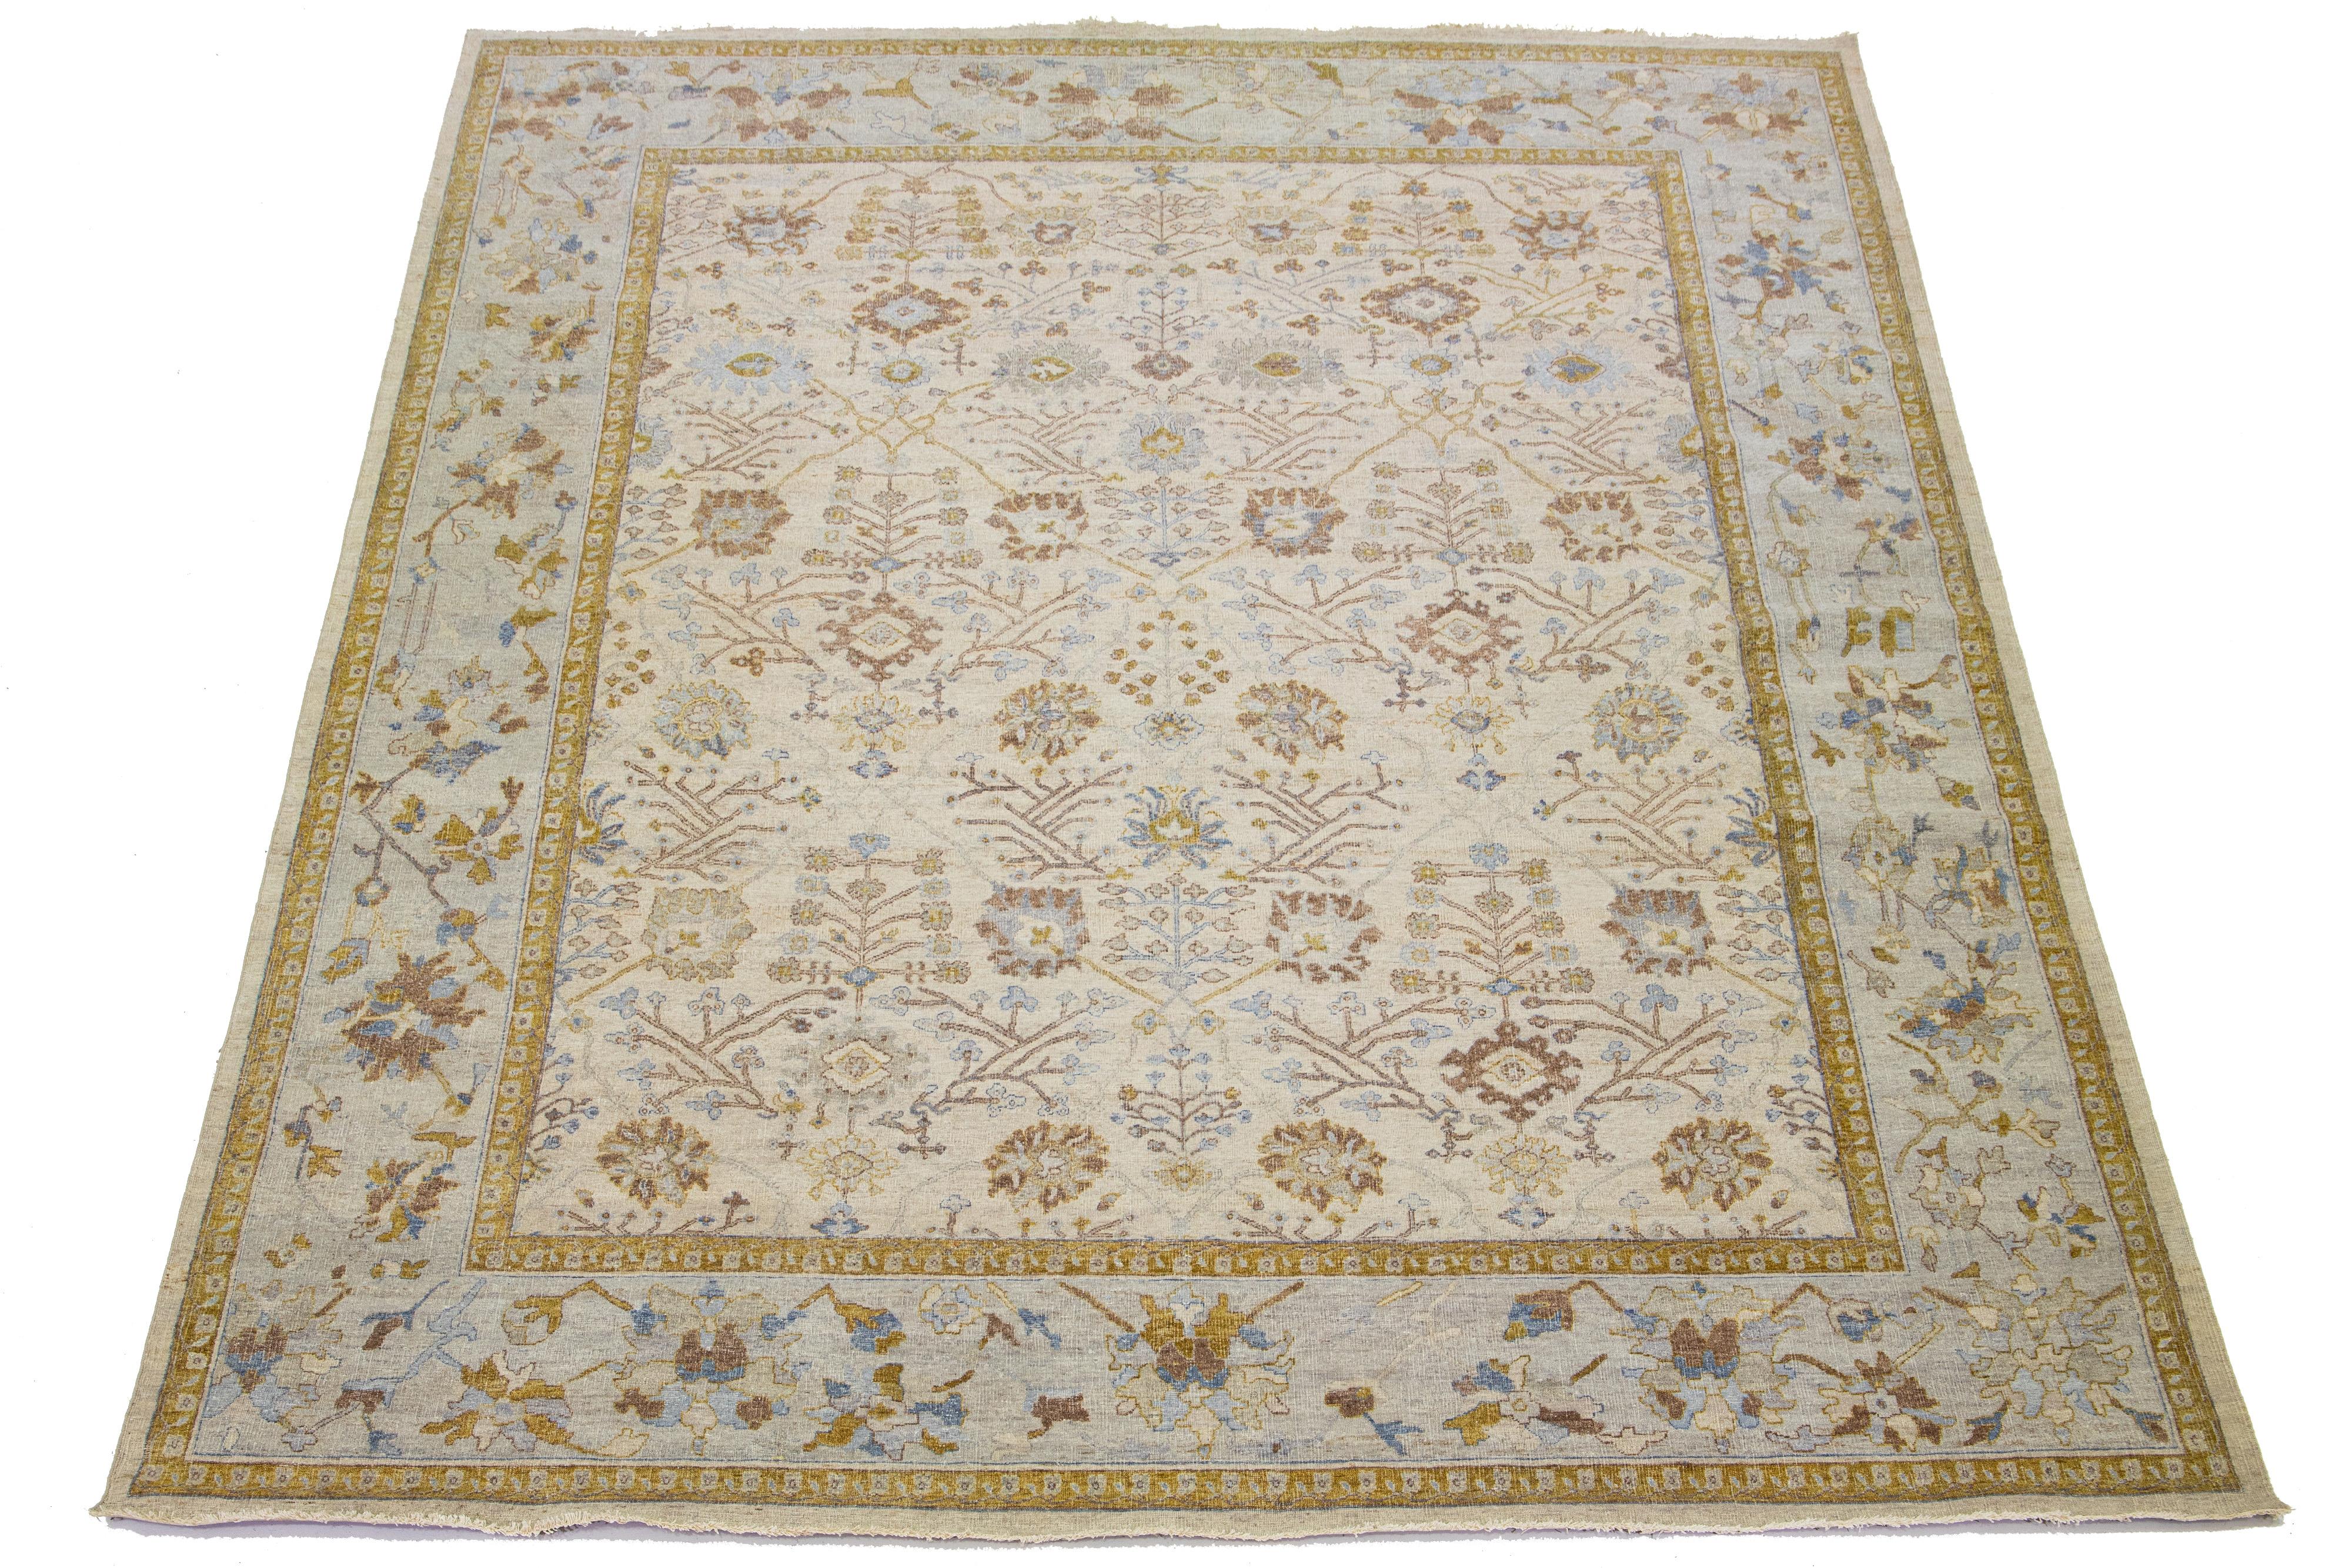 Die Artisan-Linie von Apadana bringt einen schönen antiken Stil in jeden Raum. Dieser handgeknüpfte Teppich zeigt ein charmantes florales Allover-Muster in Beige mit grauen, goldroten und braunen Akzenten. 

Dieser Teppich misst 11' 11